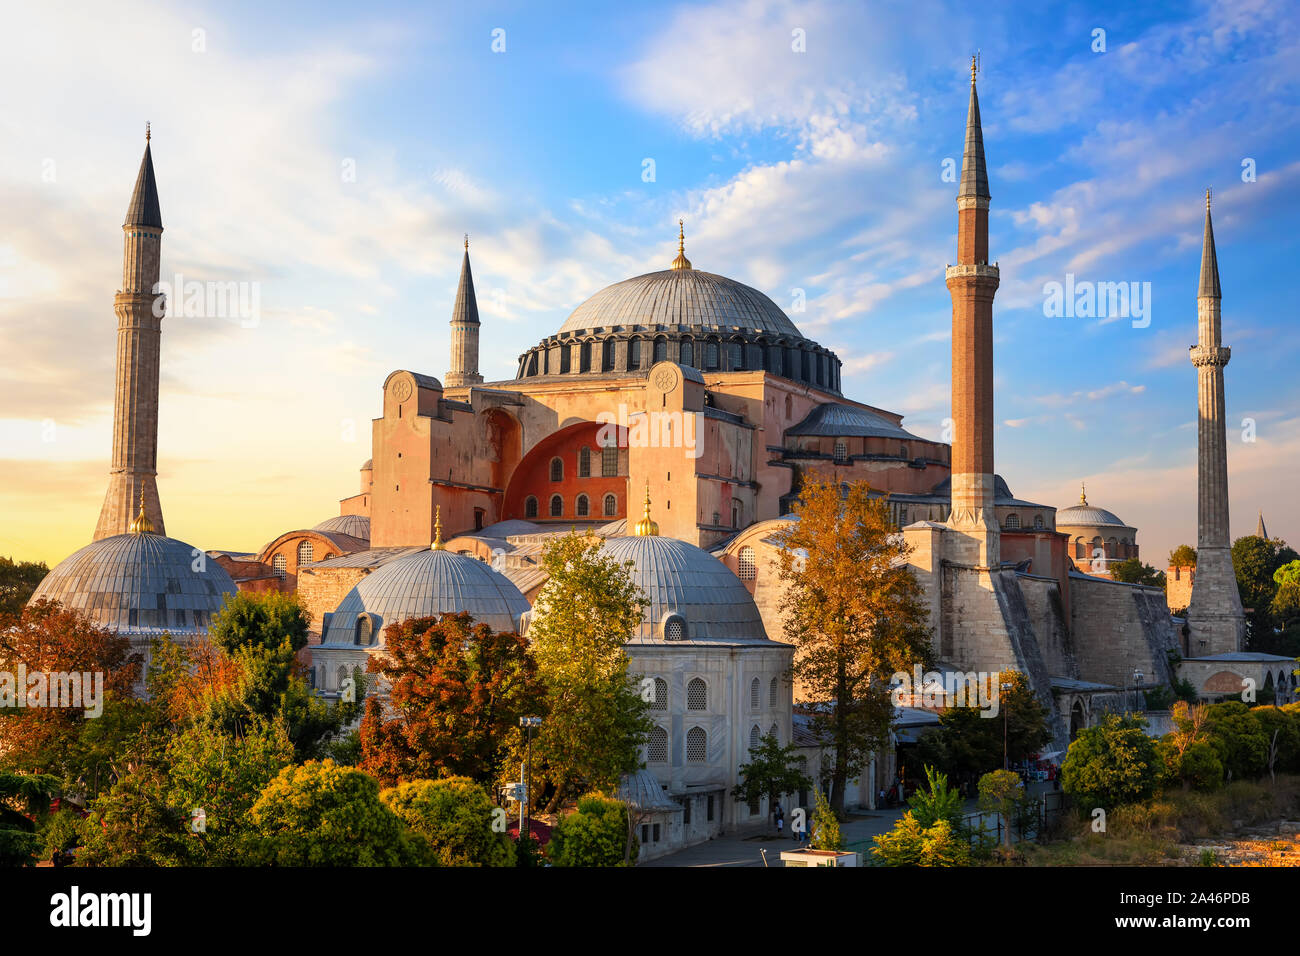 Die Hagia Sophia, eine der berühmtesten Moschee in Istanbul, Türkei Stockfoto